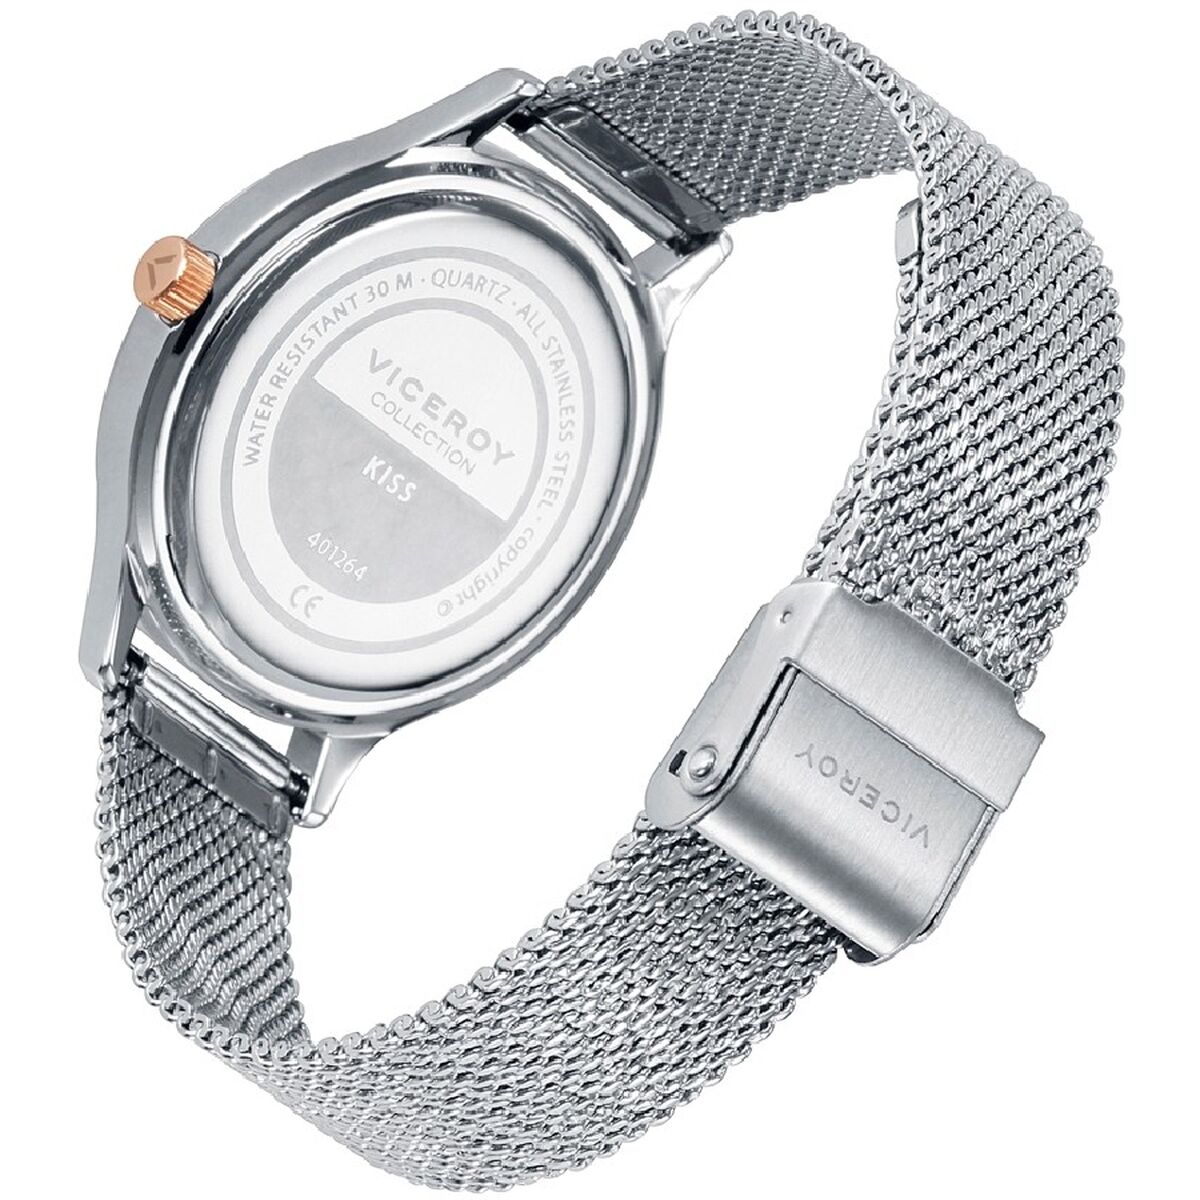 Horloge Dames Viceroy 401264-37 (Ø 40 mm)